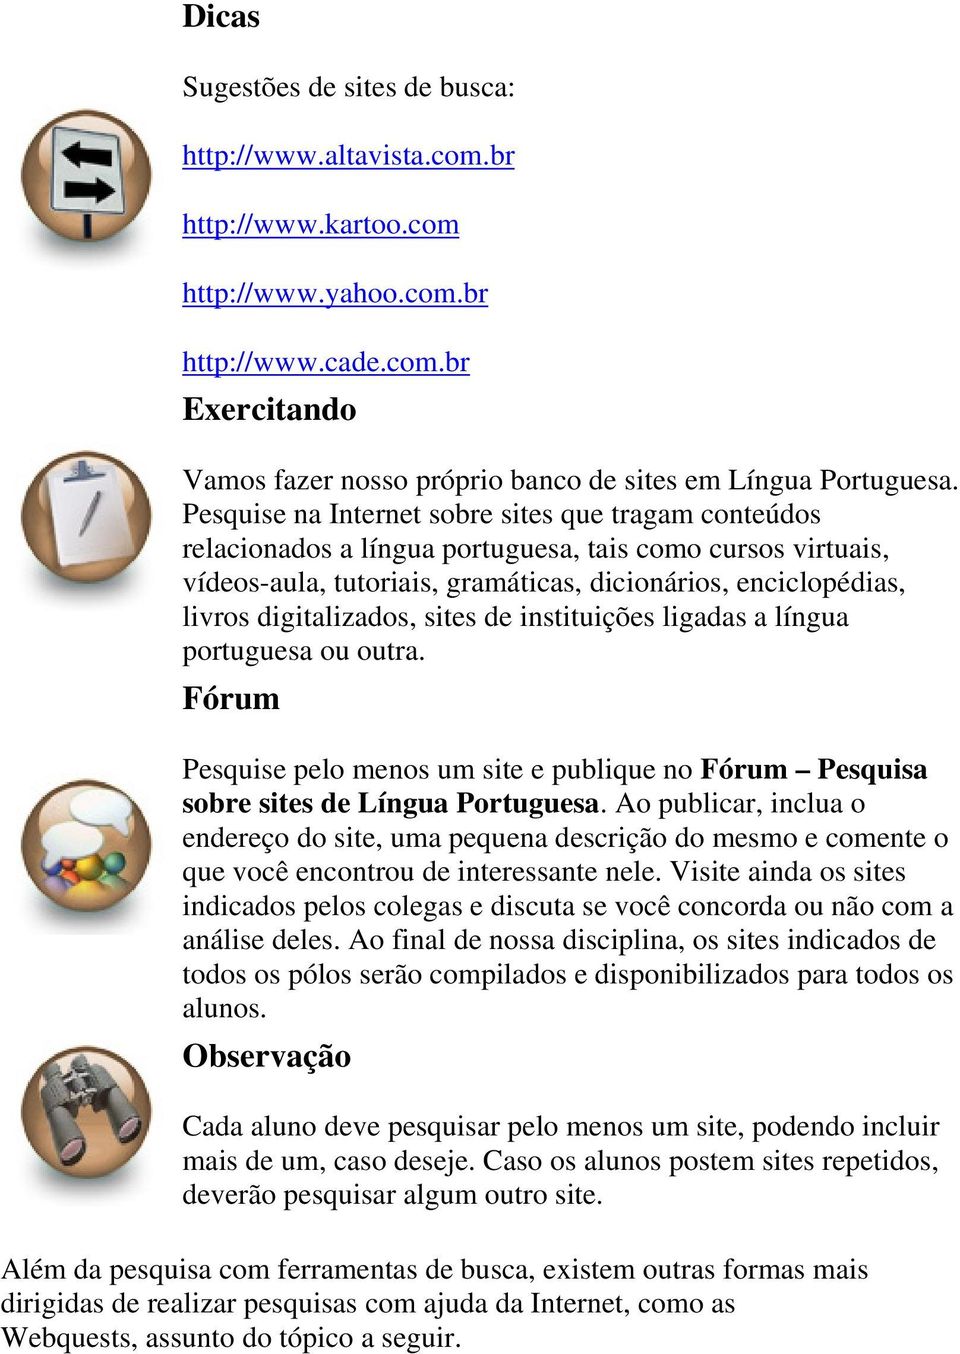 digitalizados, sites de instituições ligadas a língua portuguesa ou outra. Fórum Pesquise pelo menos um site e publique no Fórum Pesquisa sobre sites de Língua Portuguesa.